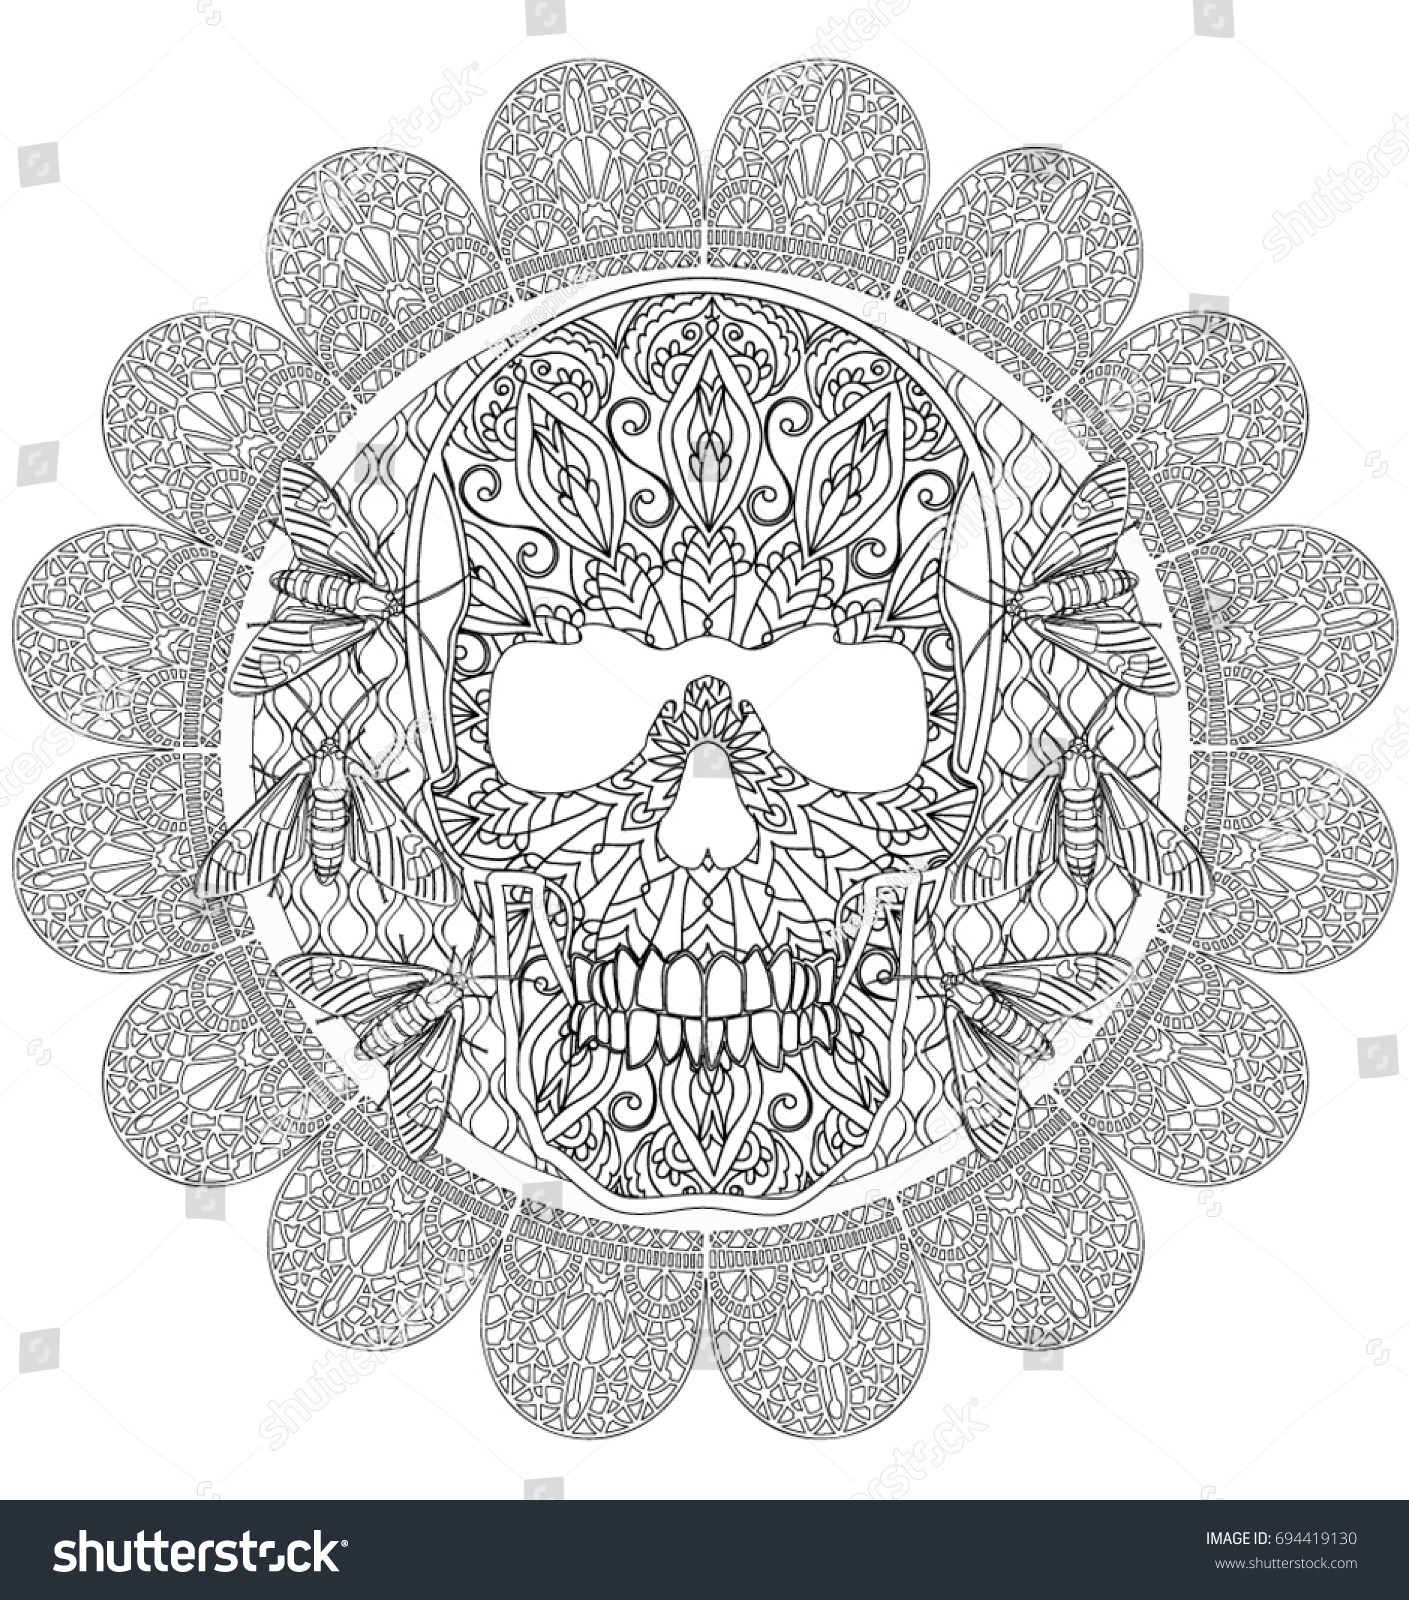 Skull Mandala Coloring Page Stock Vector Royalty Free 694419130